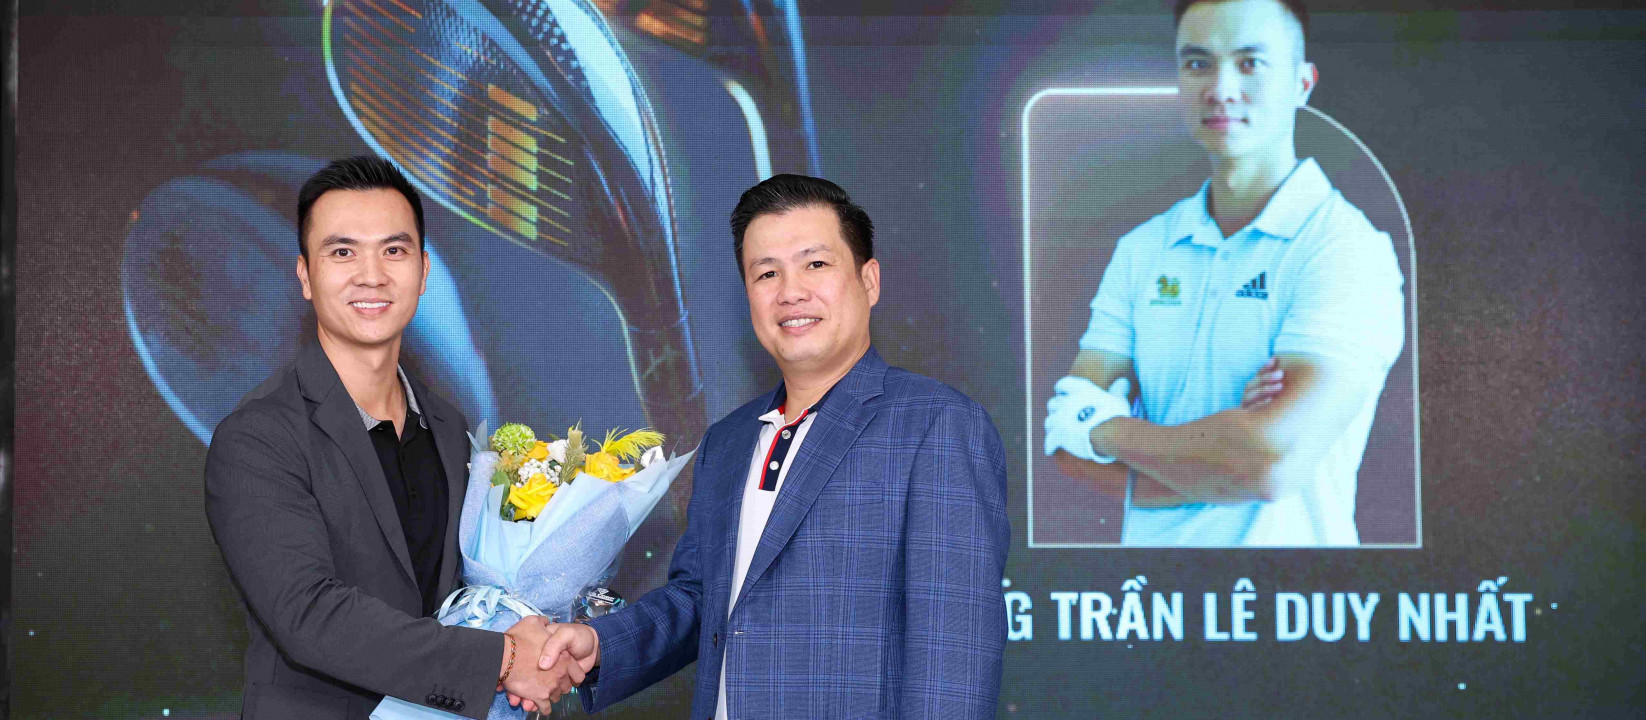 Trần Lê Duy Nhất được bổ nhiệm làm Giám đốc Chiến lược của VG Corp